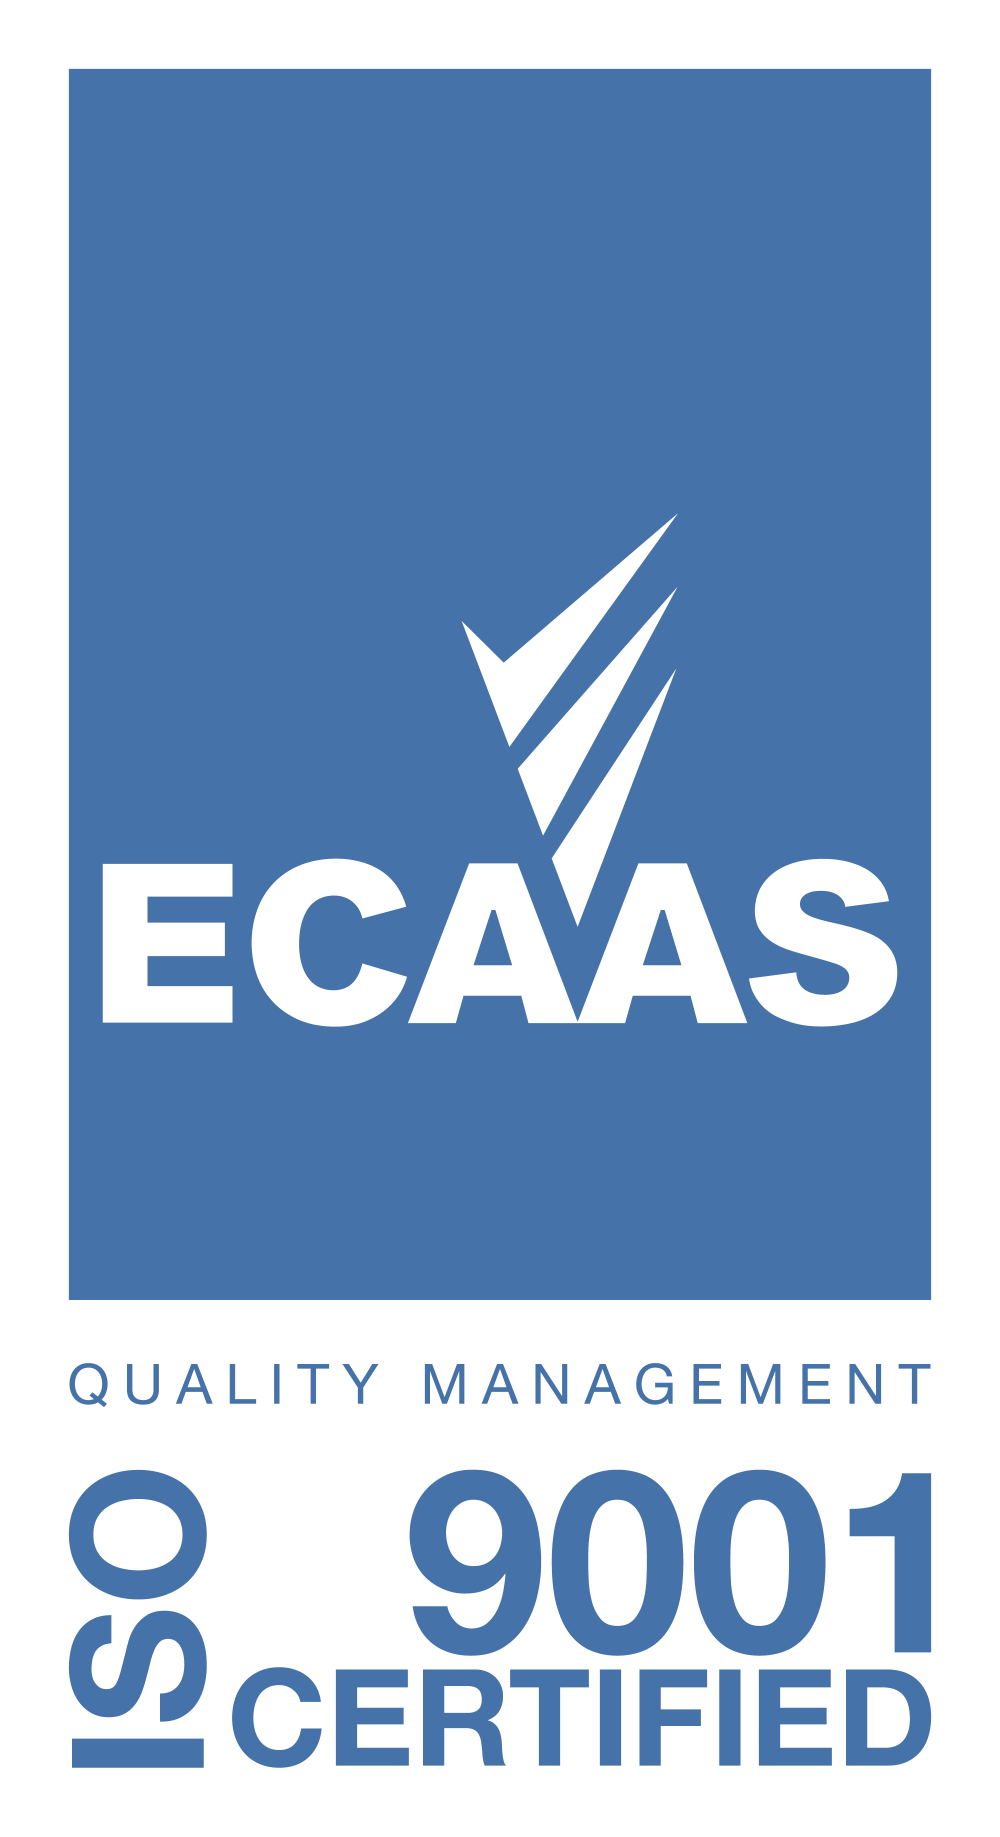 ECAAS Marks_ 9001 Quality Management_ Large